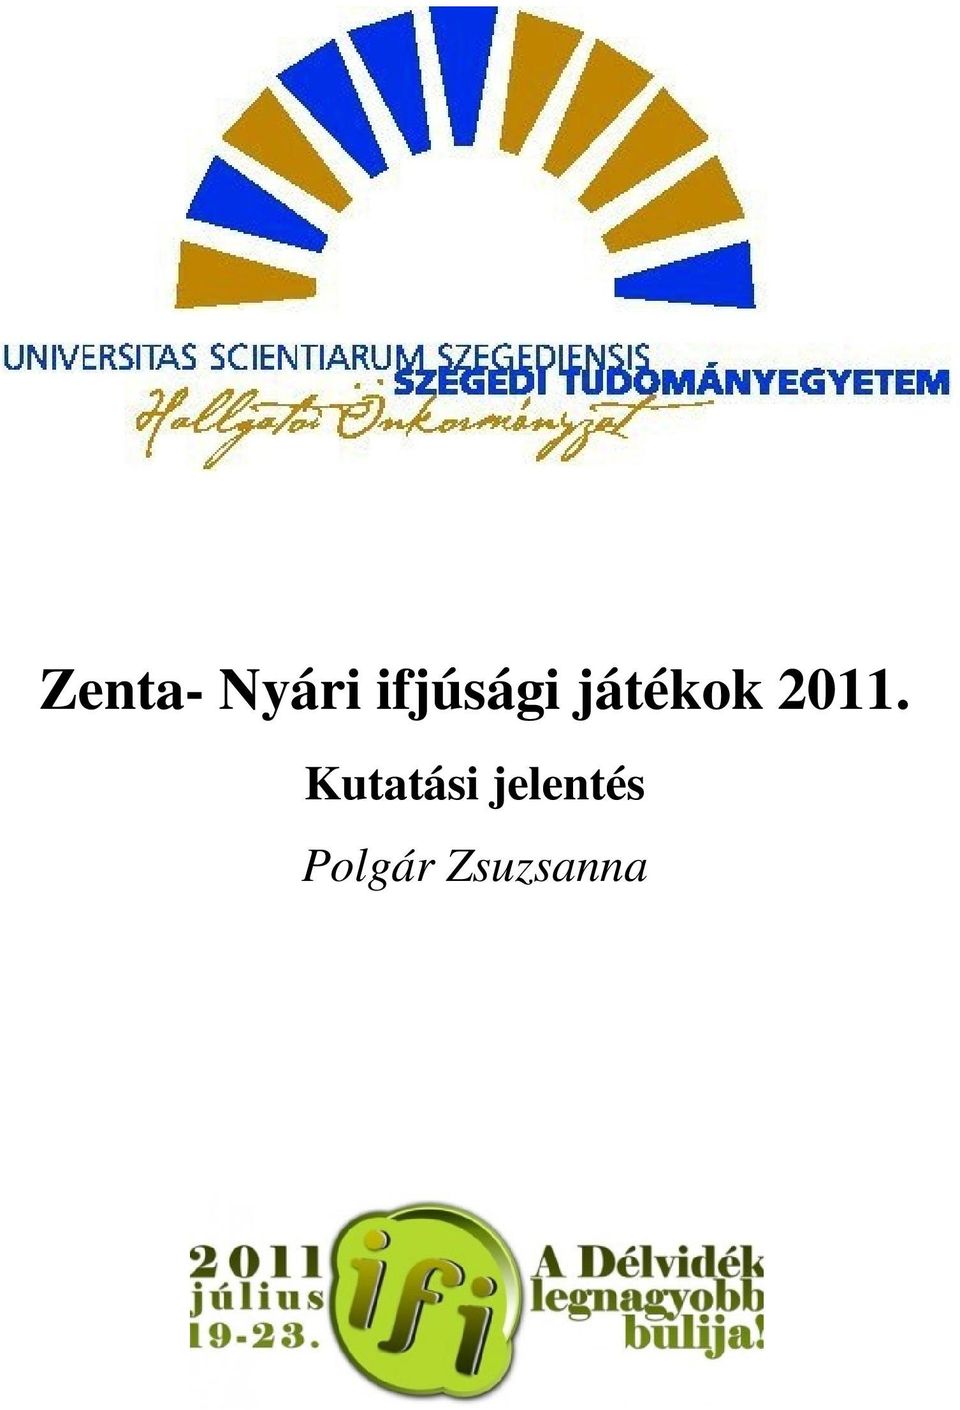 2011. Kutatási